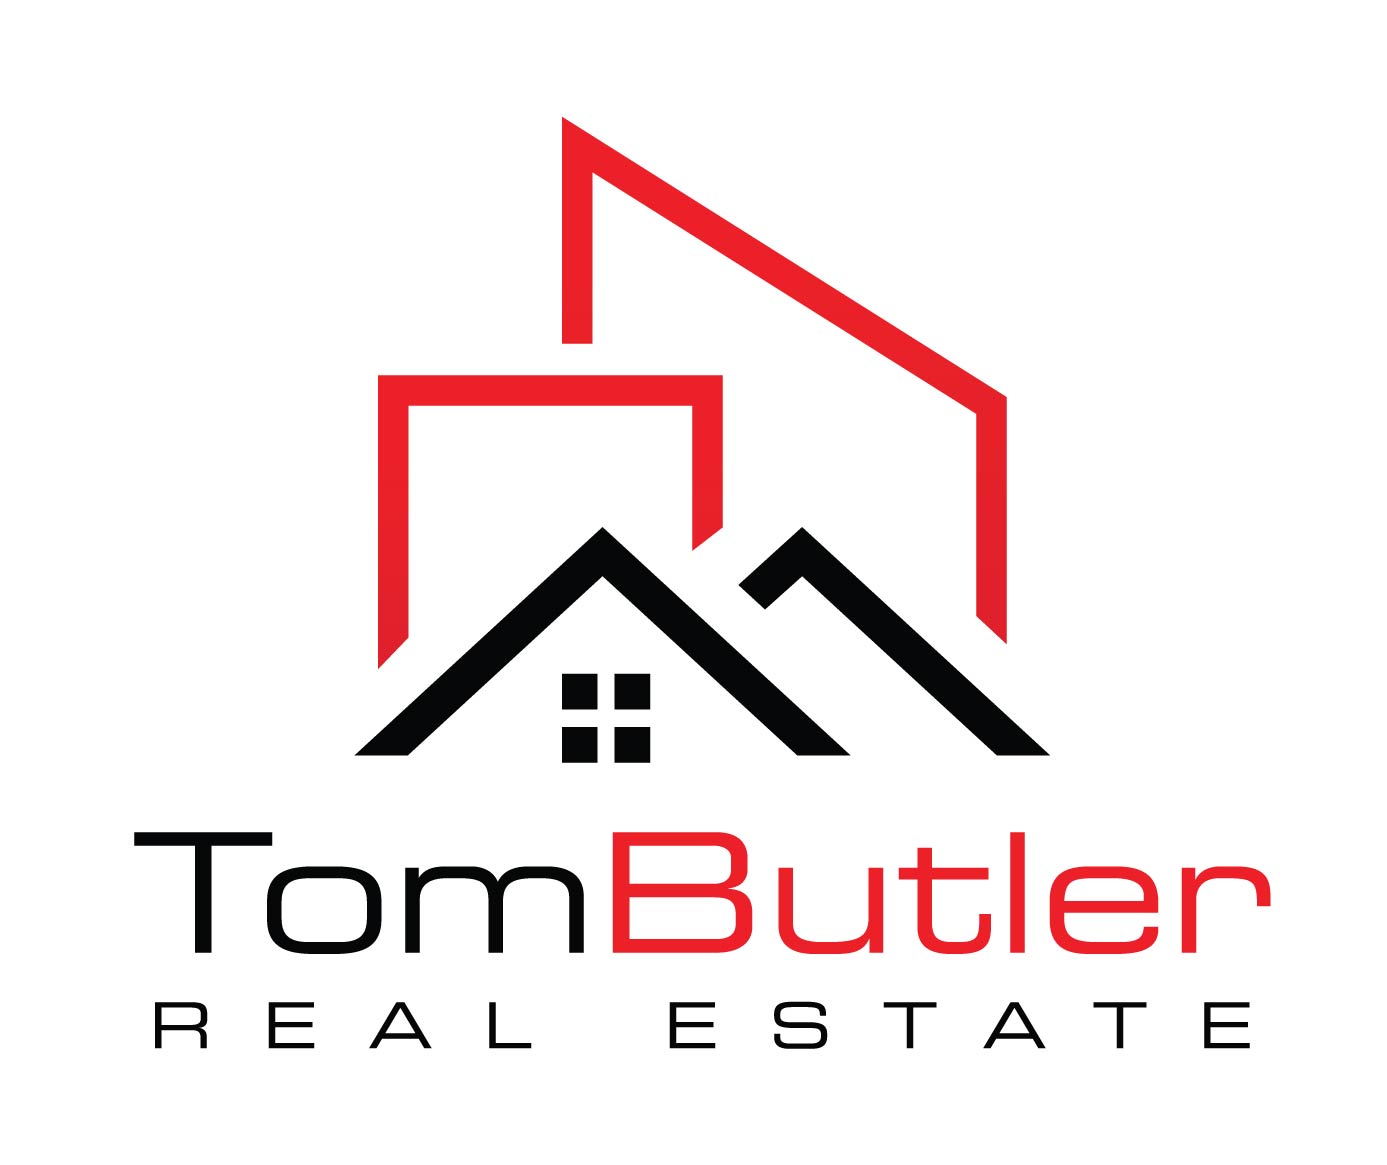 Tom Butler Real Estate